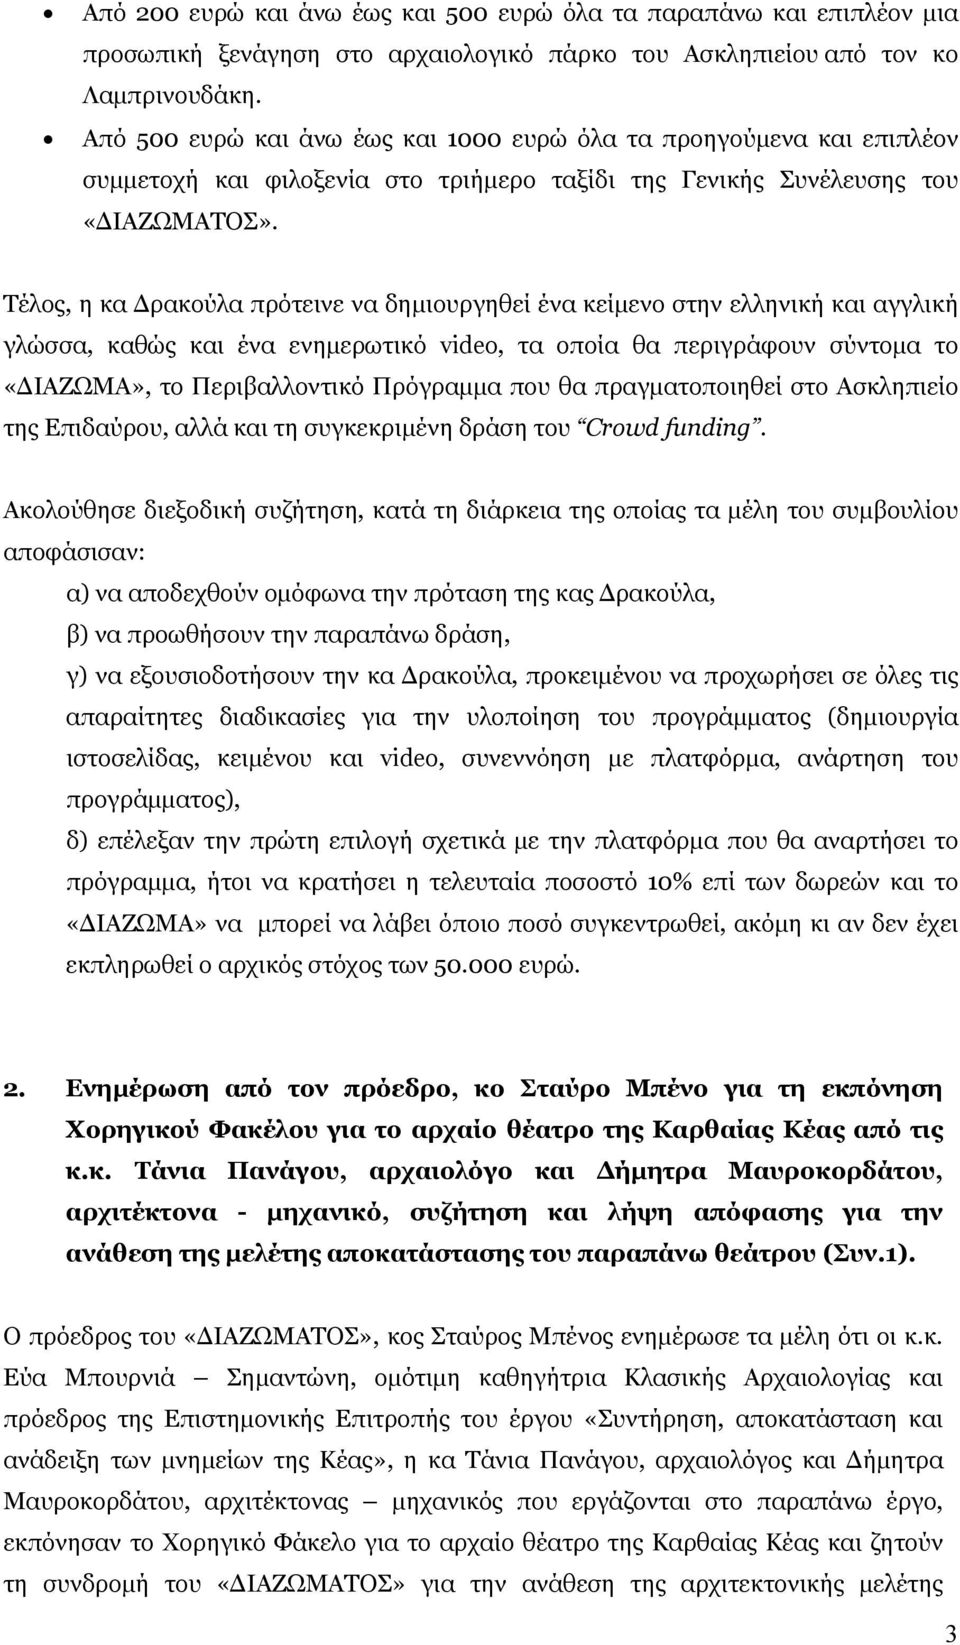 Τέλος, η κα Δρακούλα πρότεινε να δημιουργηθεί ένα κείμενο στην ελληνική και αγγλική γλώσσα, καθώς και ένα ενημερωτικό video, τα οποία θα περιγράφουν σύντομα το «ΔΙΑΖΩΜΑ», το Περιβαλλοντικό Πρόγραμμα